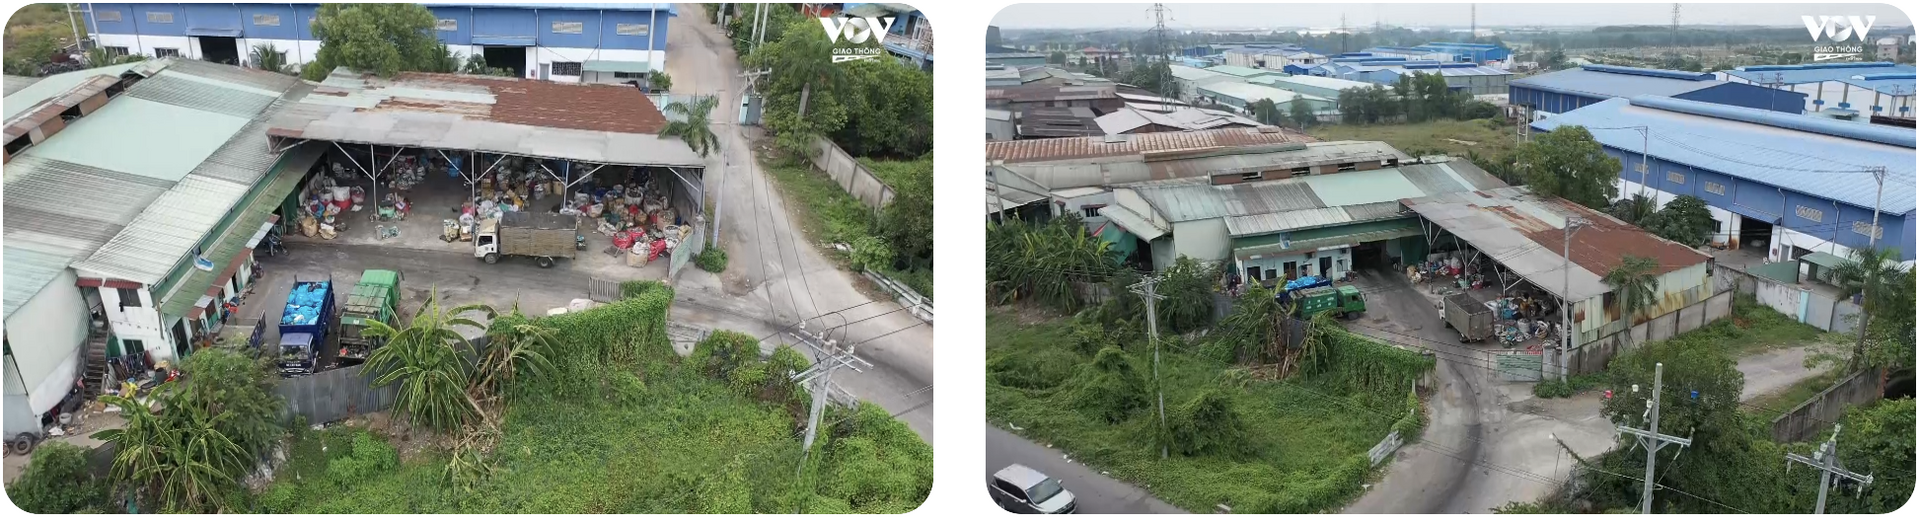 Căn nhà bên trong chứa rác thuộc khu công nghiệp Hải Sơn từng bị VOV giao thông phản ánh giờ là trạm trung chuyển rác Đức Hòa.